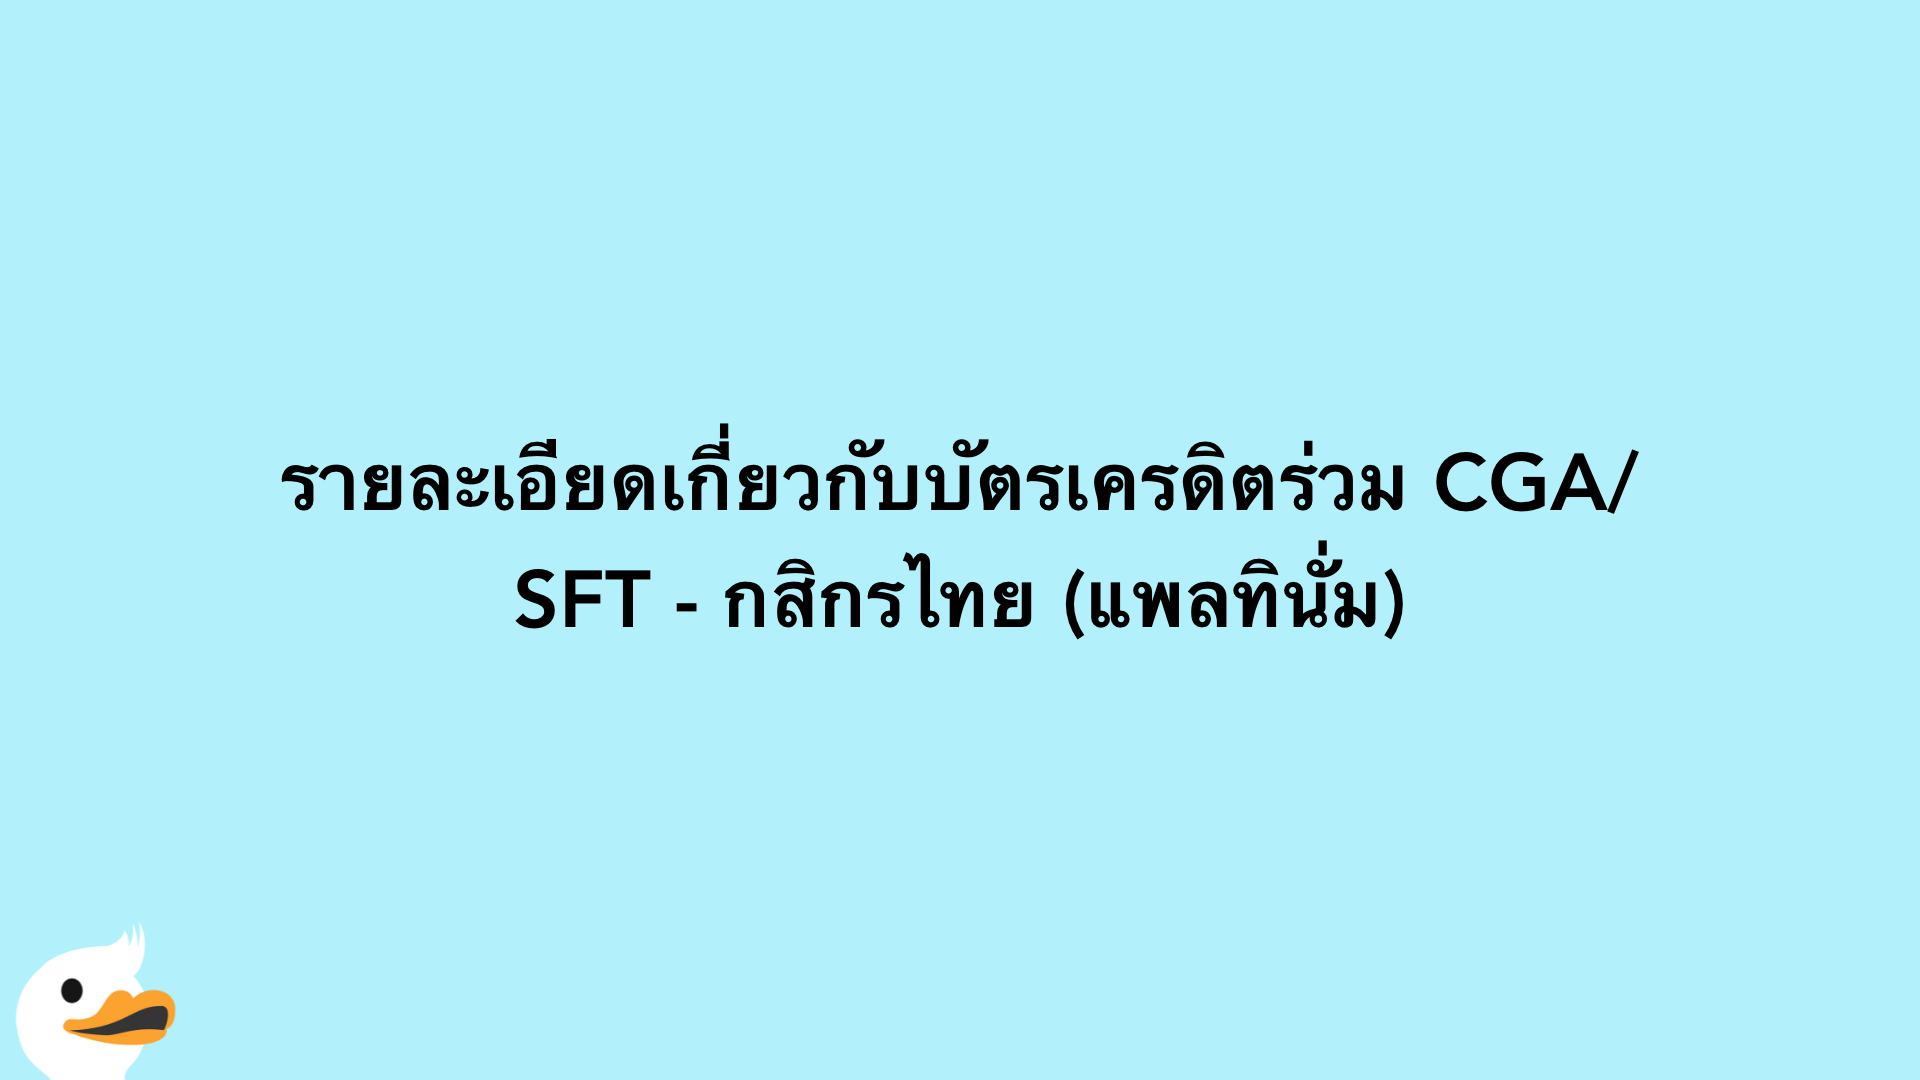 รายละเอียดเกี่ยวกับบัตรเครดิตร่วม CGA/SFT - กสิกรไทย (แพลทินั่ม)